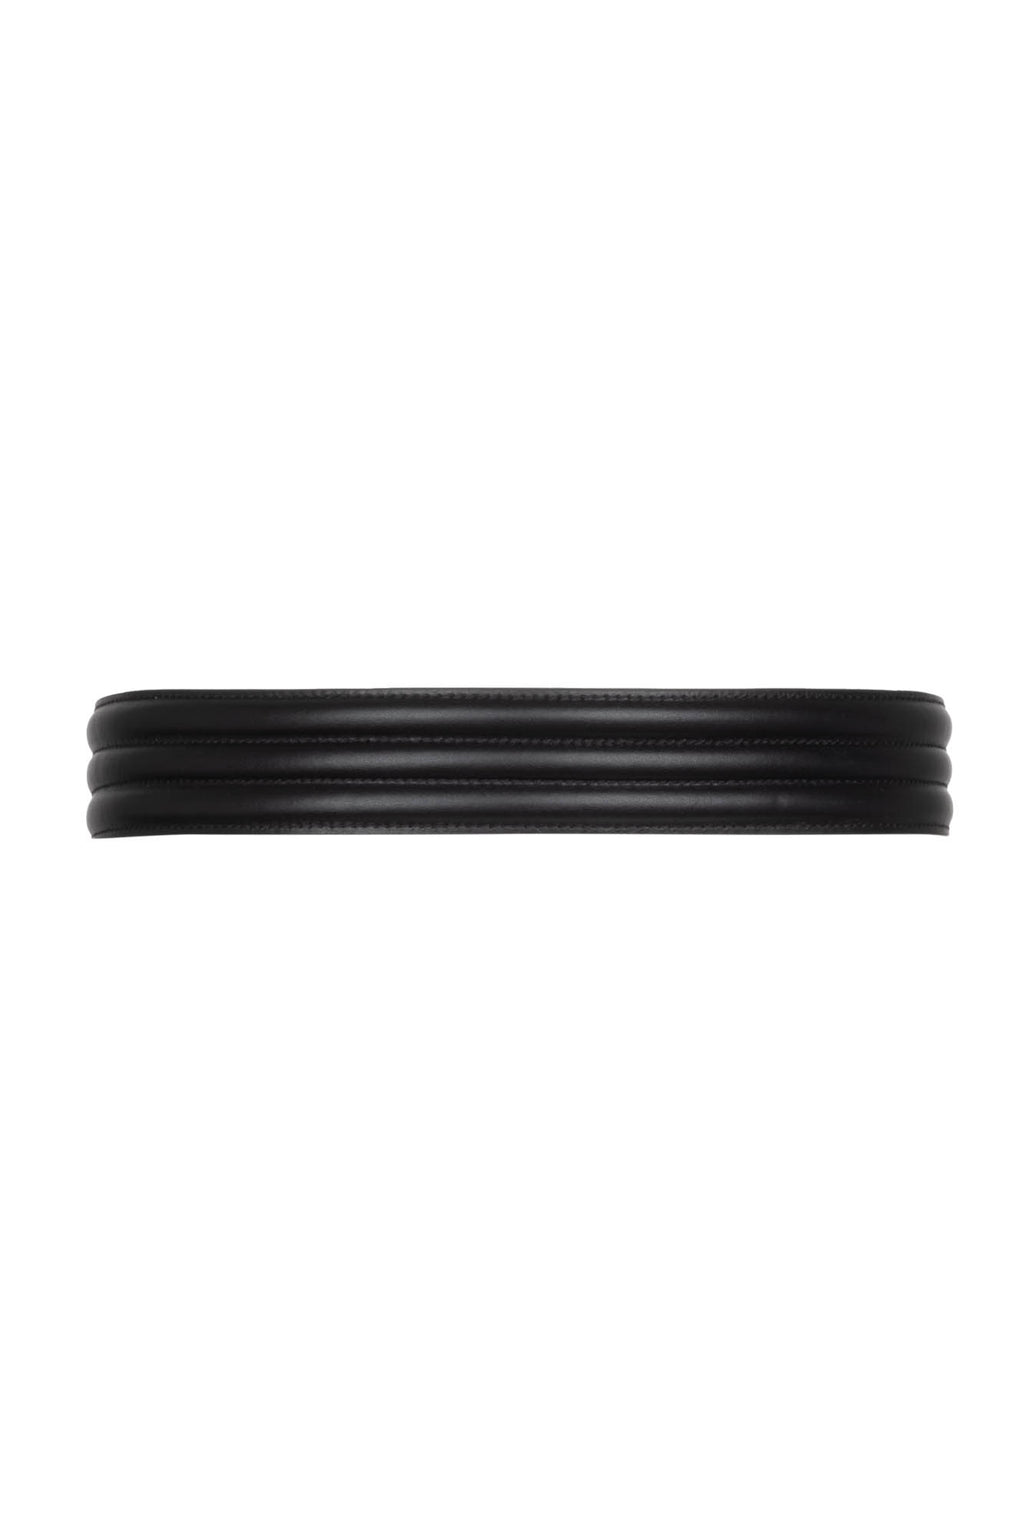 Banded Belt - Black Leather